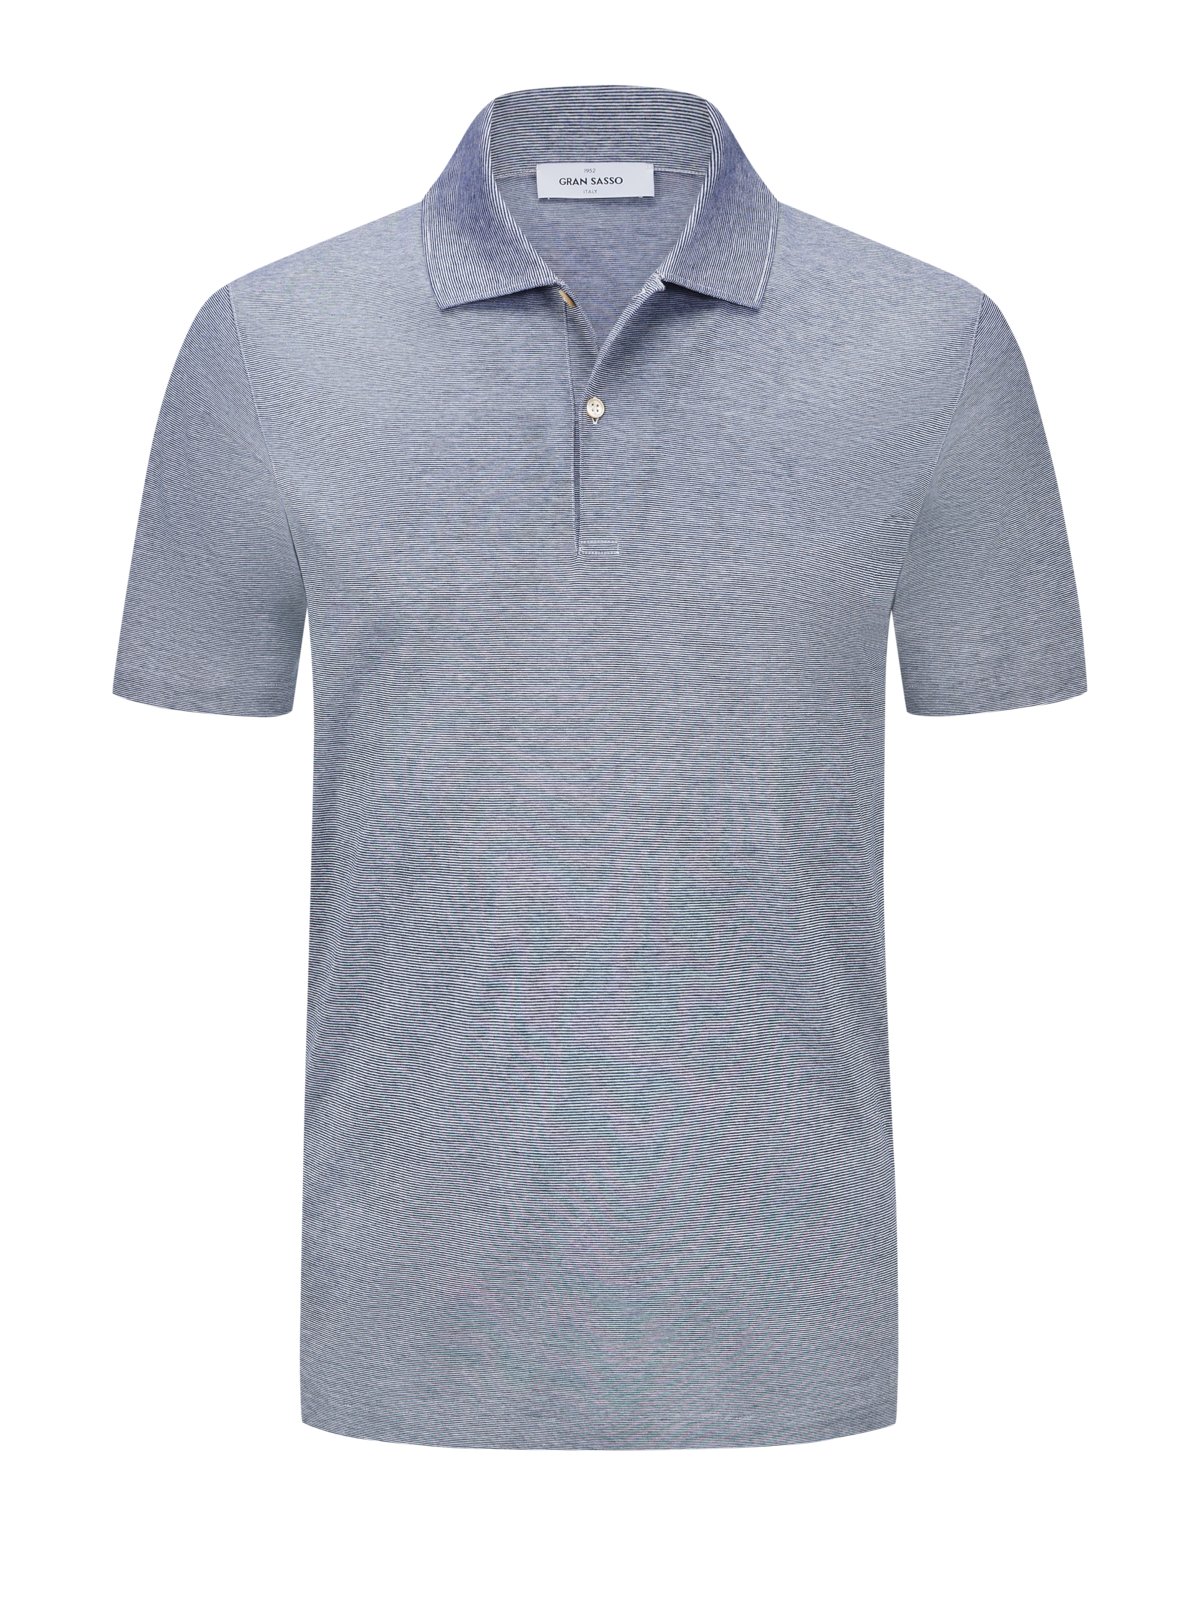 Gran Sasso Poloshirt aus leichter Baumwolle mit filigranem Streifen